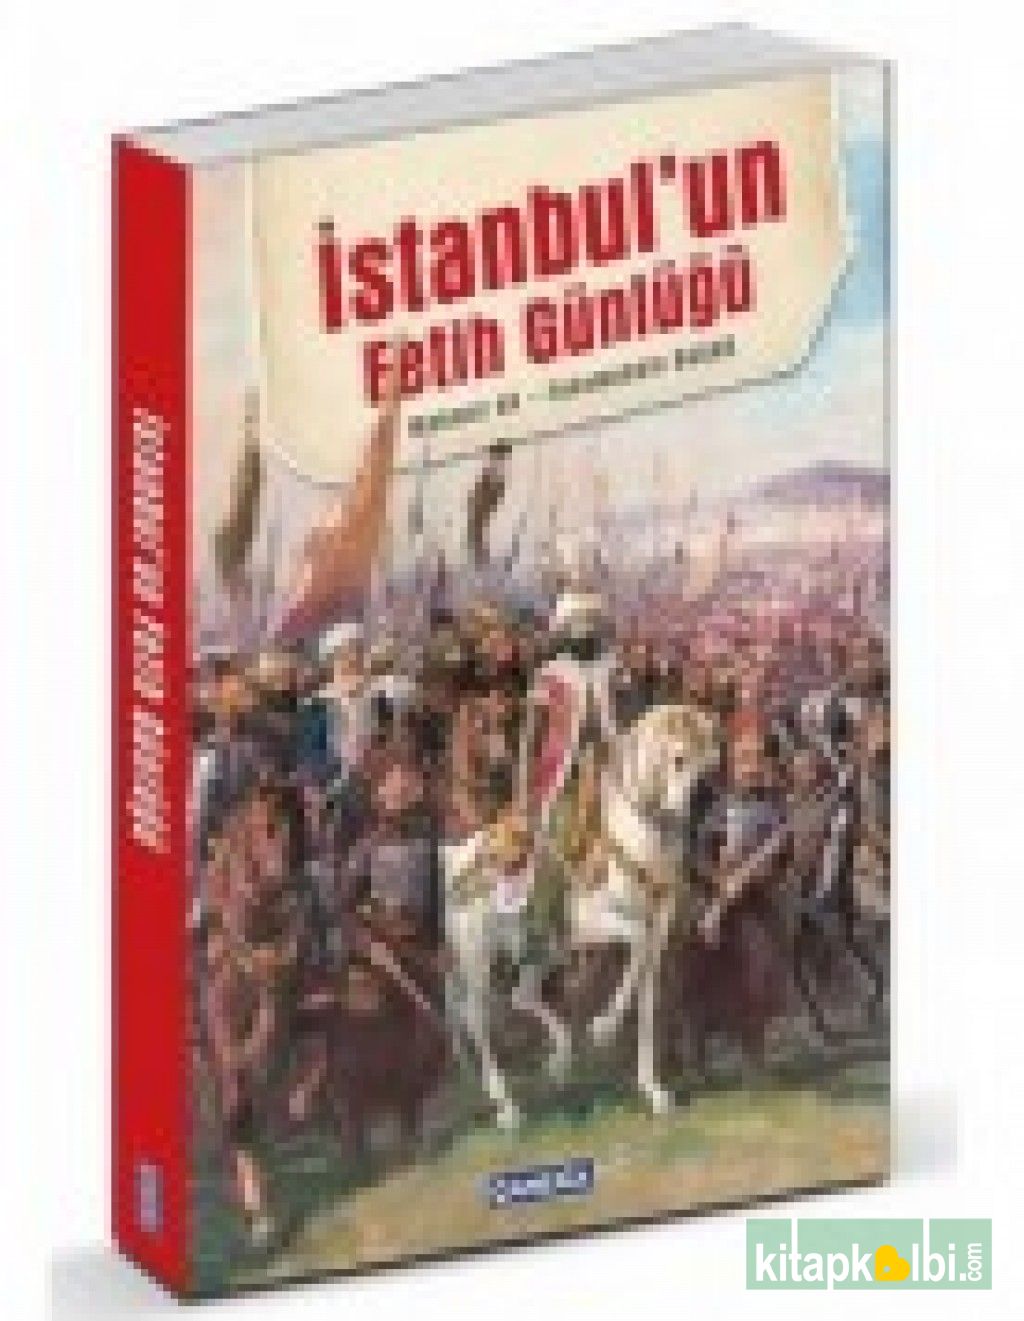 İstanbulun Fetih Günlüğü